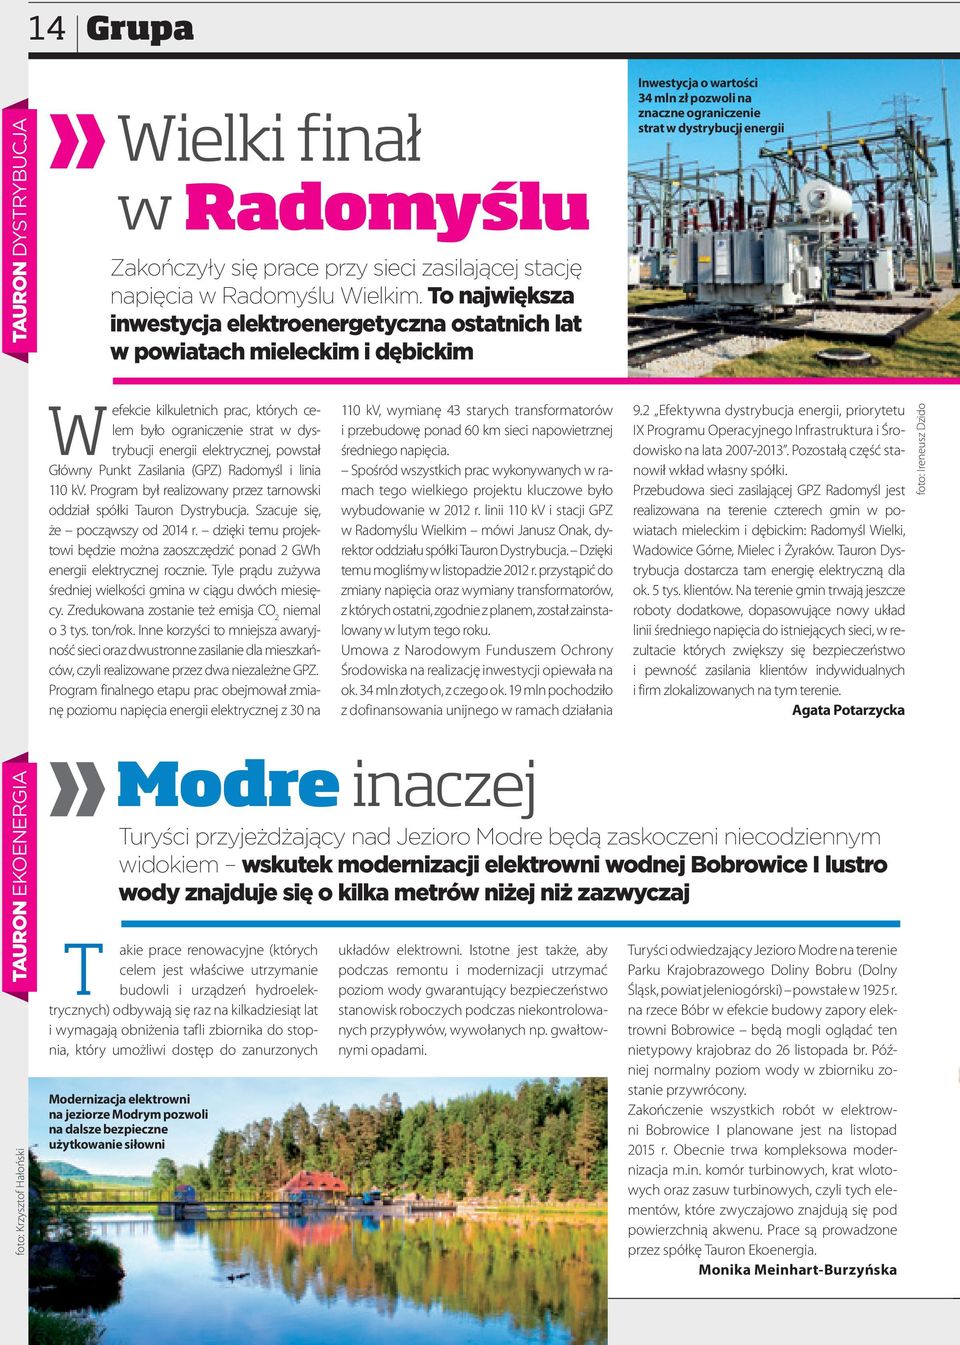 kilkuletnich prac, których celem było ograniczenie strat w dystrybucji energii elektrycznej, powstał Główny Punkt Zasilania (GPZ) Radomyśl i linia 110 kv.